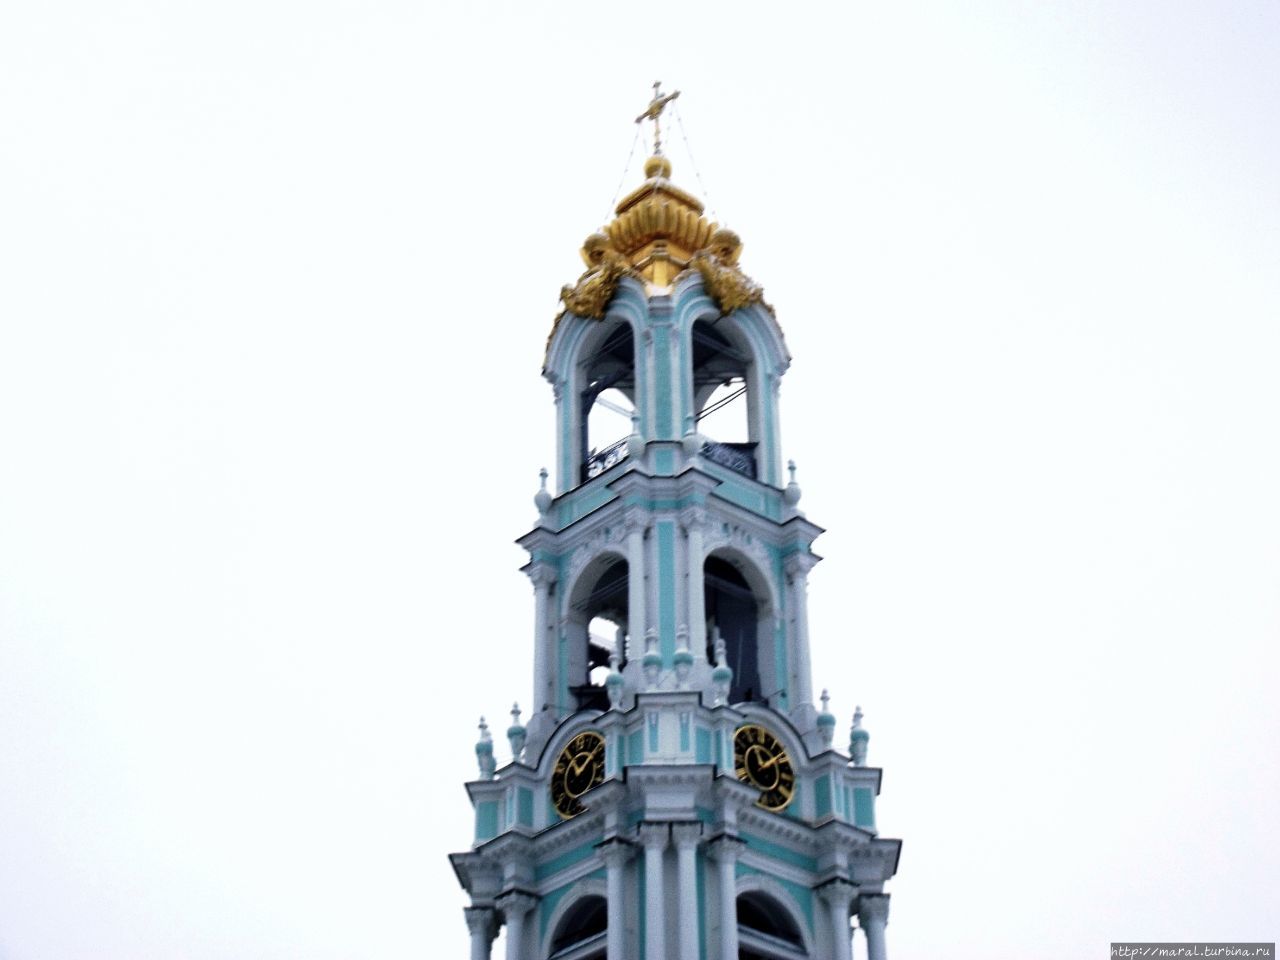 Колокольня увенчана куполом в виде золотой чаши с коронами по четырём сторонам Сергиев Посад, Россия